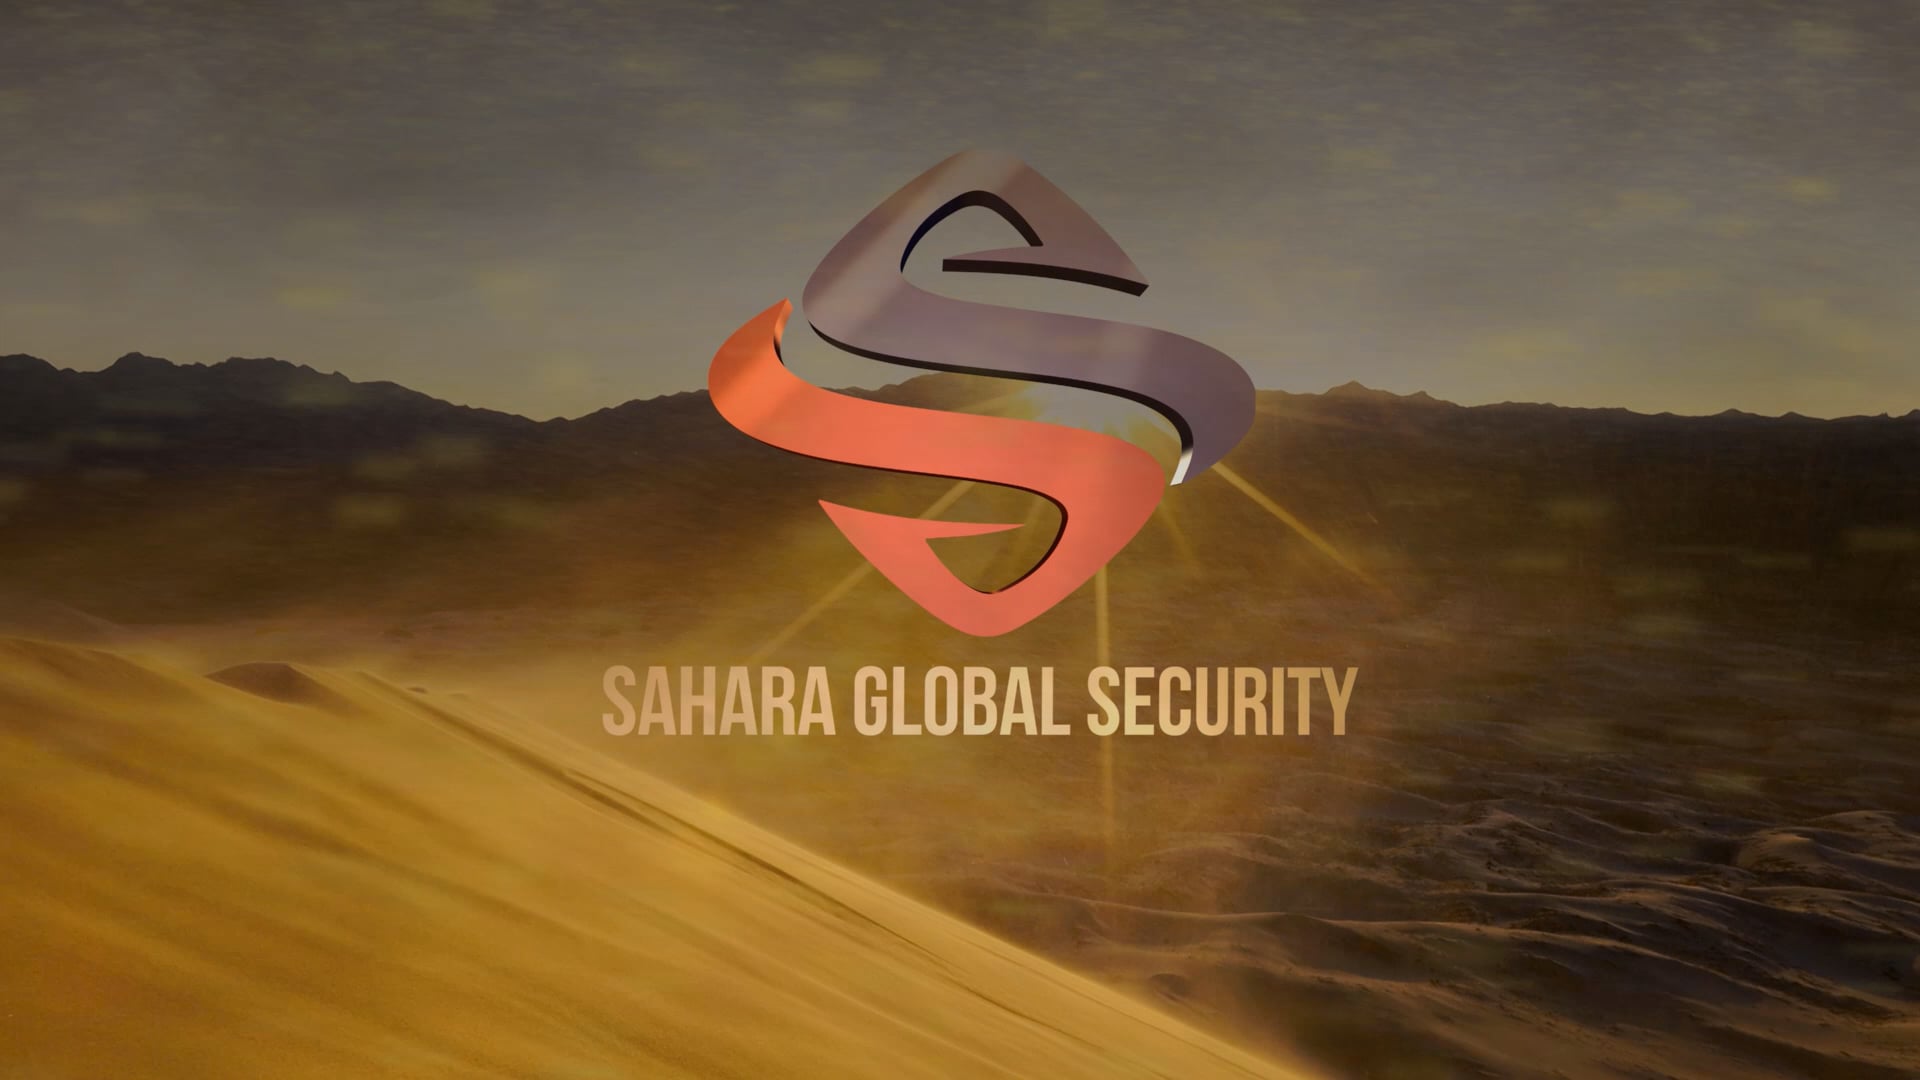 Sahara Global Security